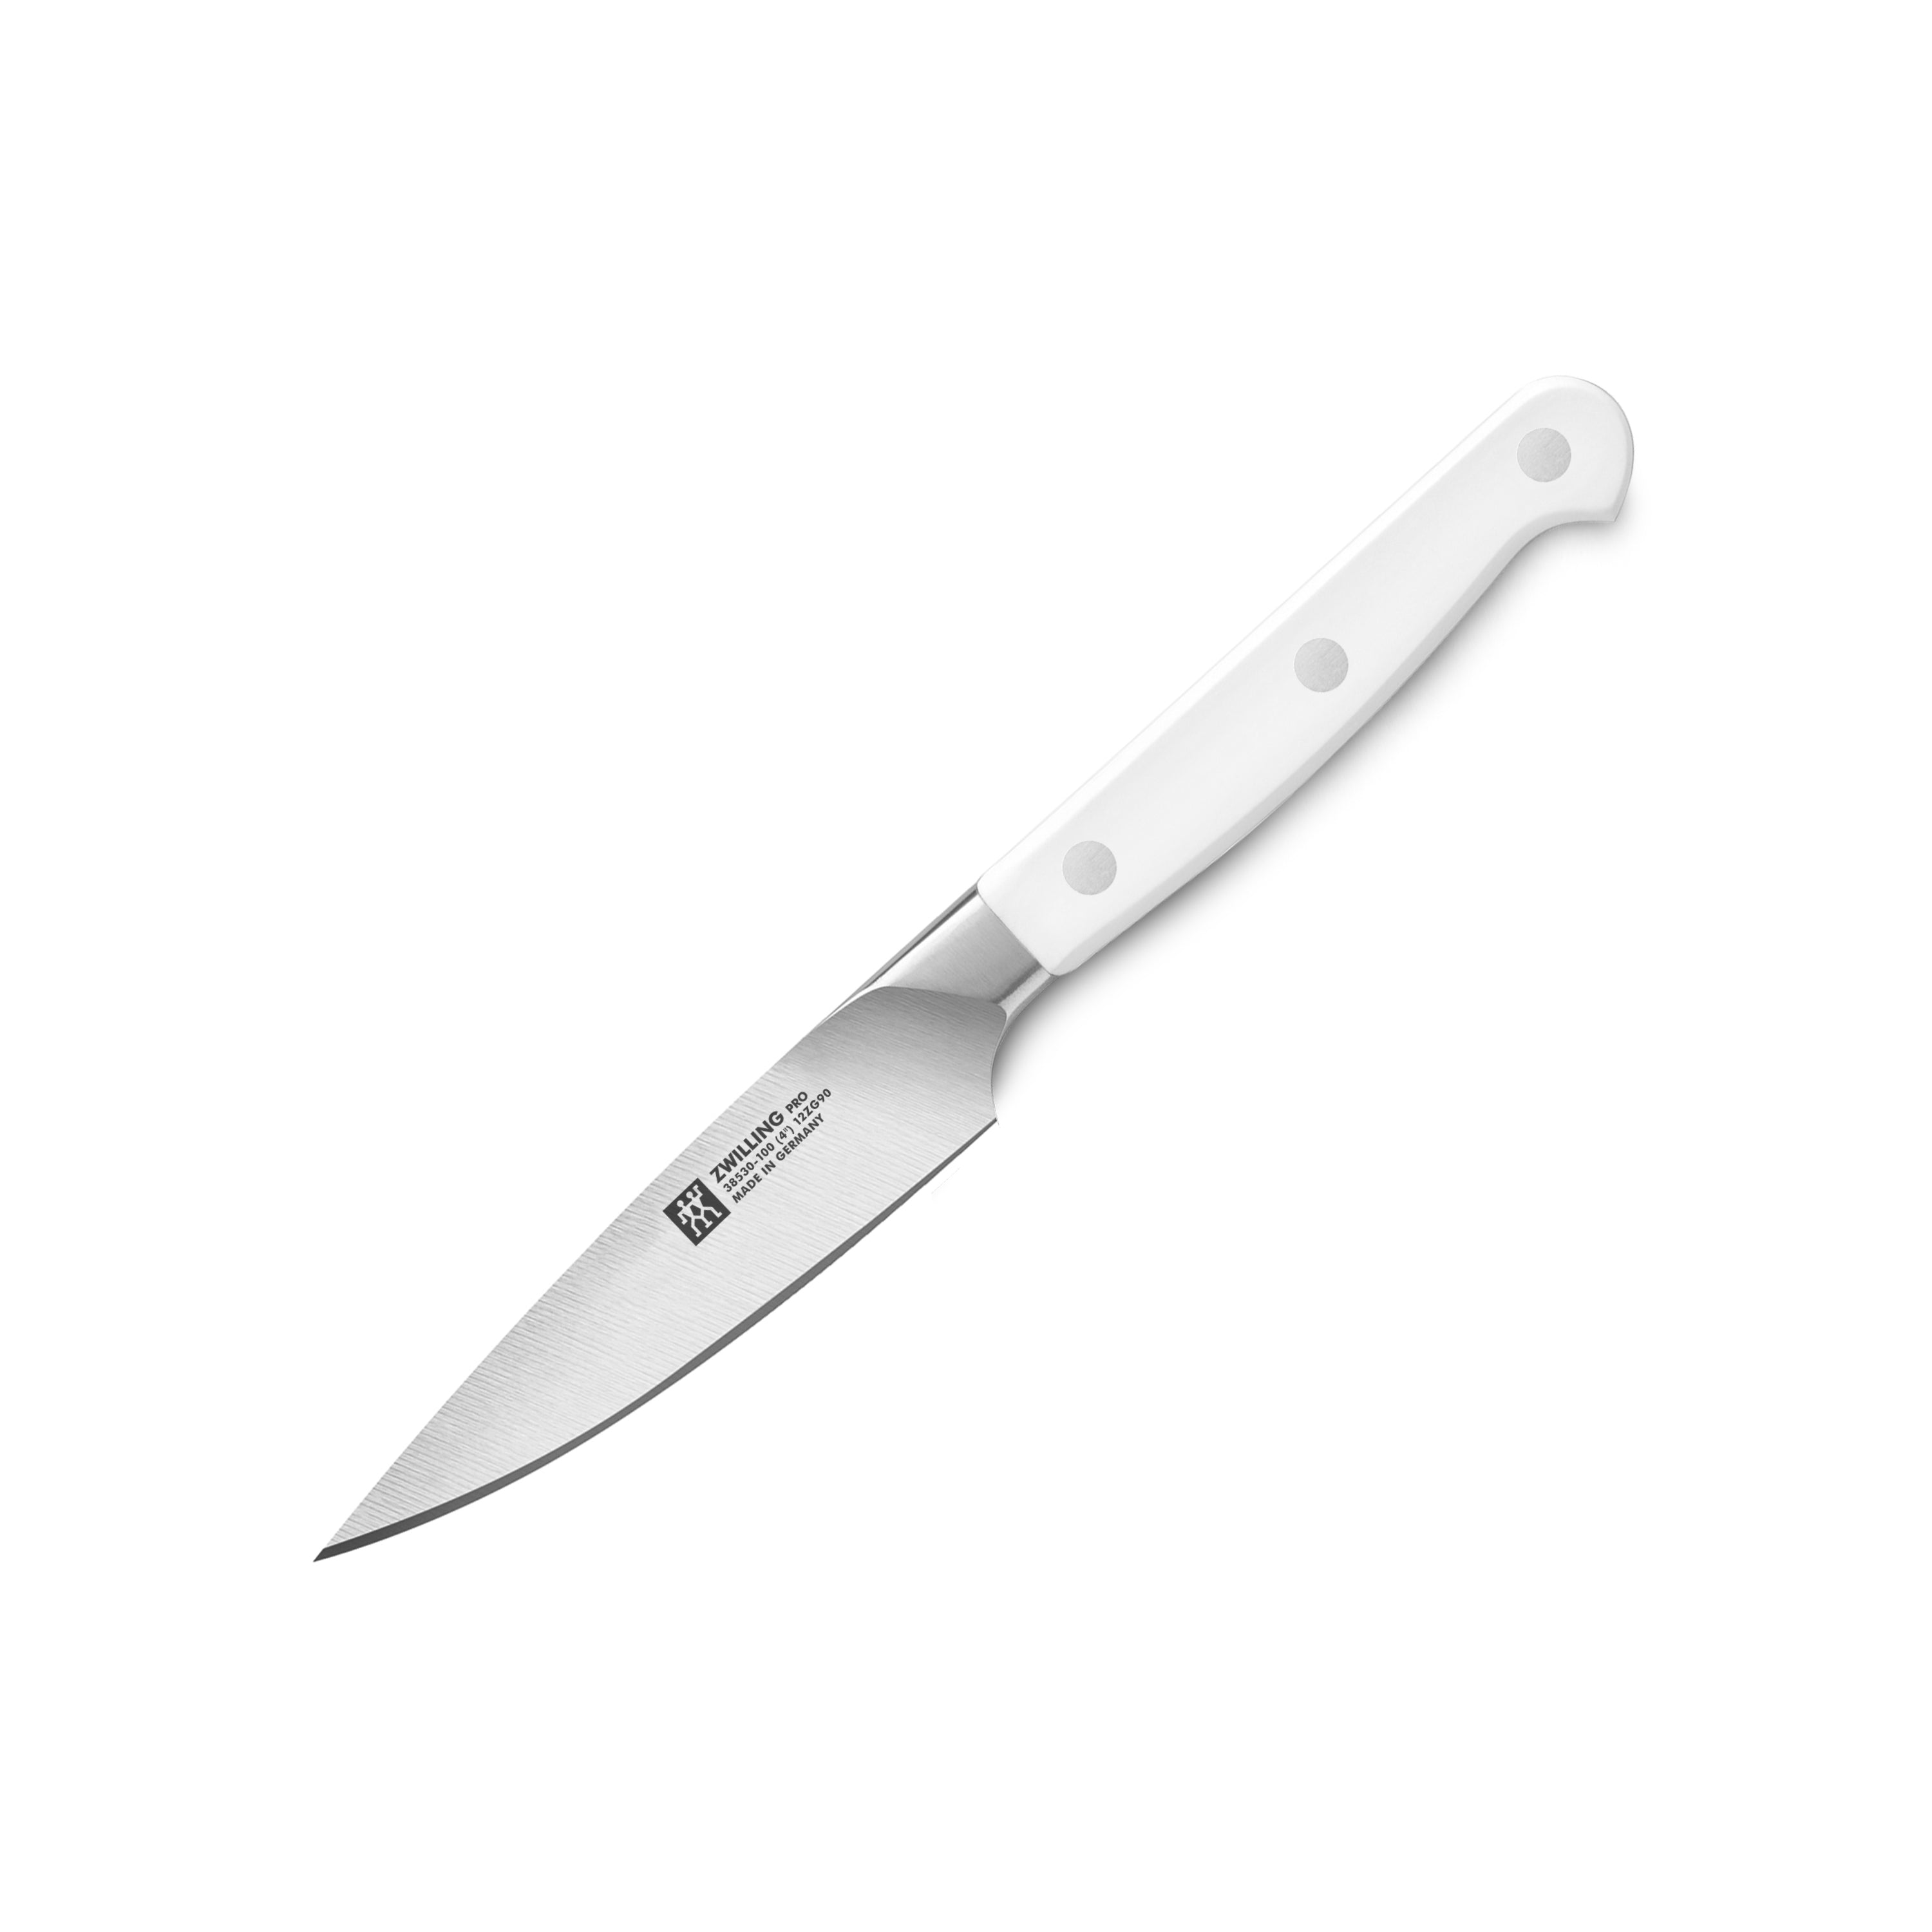 Zwilling - Pro Le Blanc 4 Paring Knife